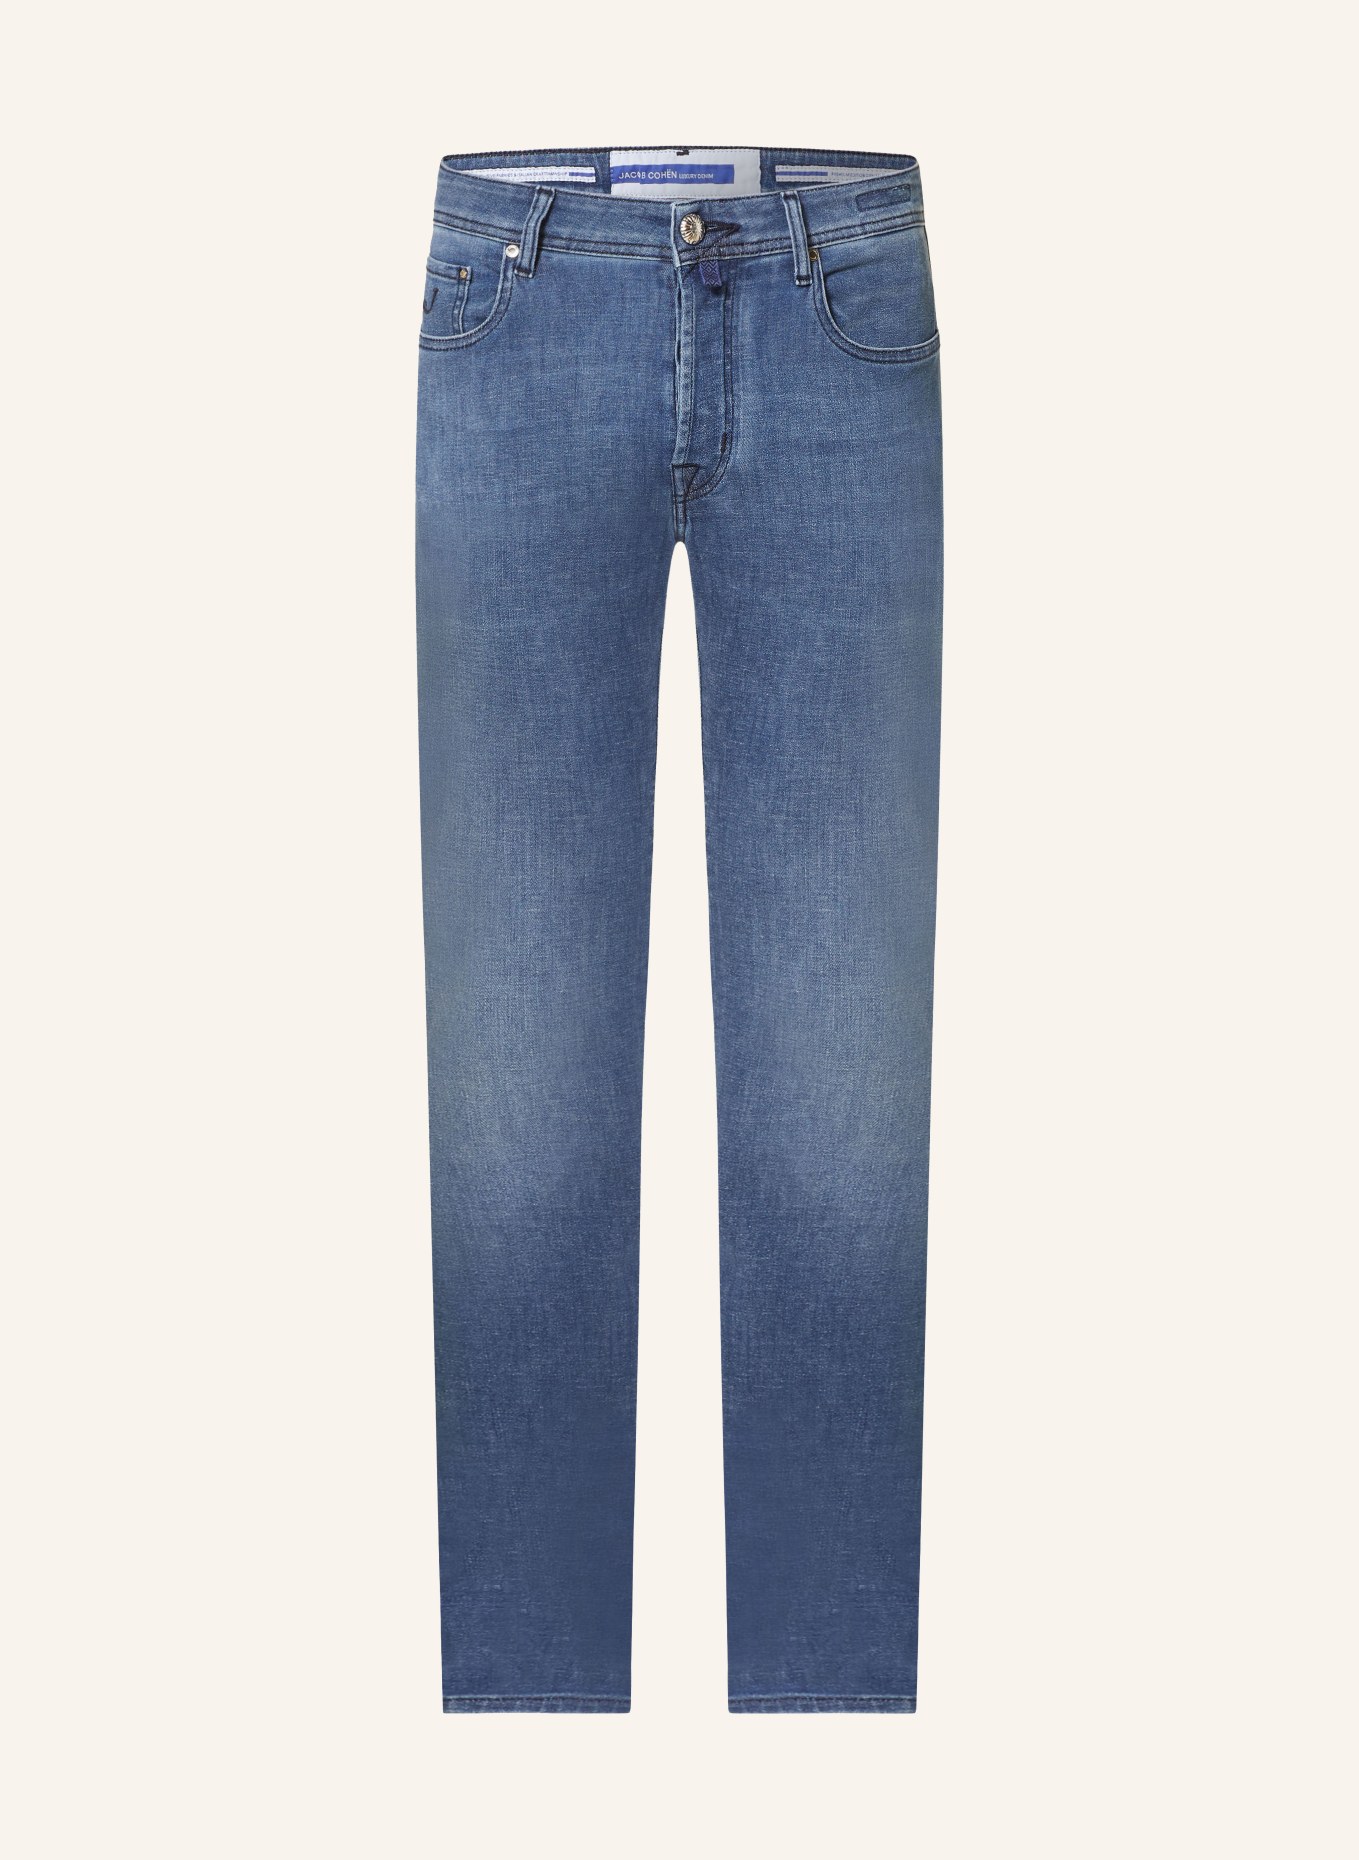 JACOB COHEN Jeans Slim Fit, Farbe: 669D Light Blue (Bild 1)